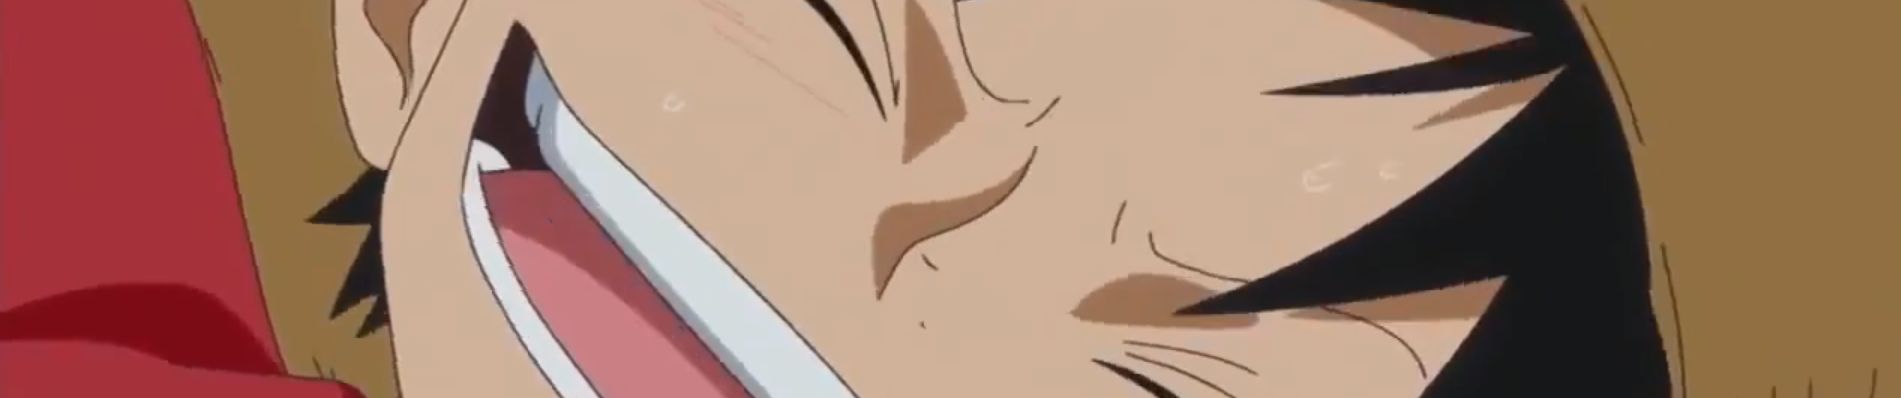 Stream One Piece Ost - Robin No Kokoro Kimaru by yousef